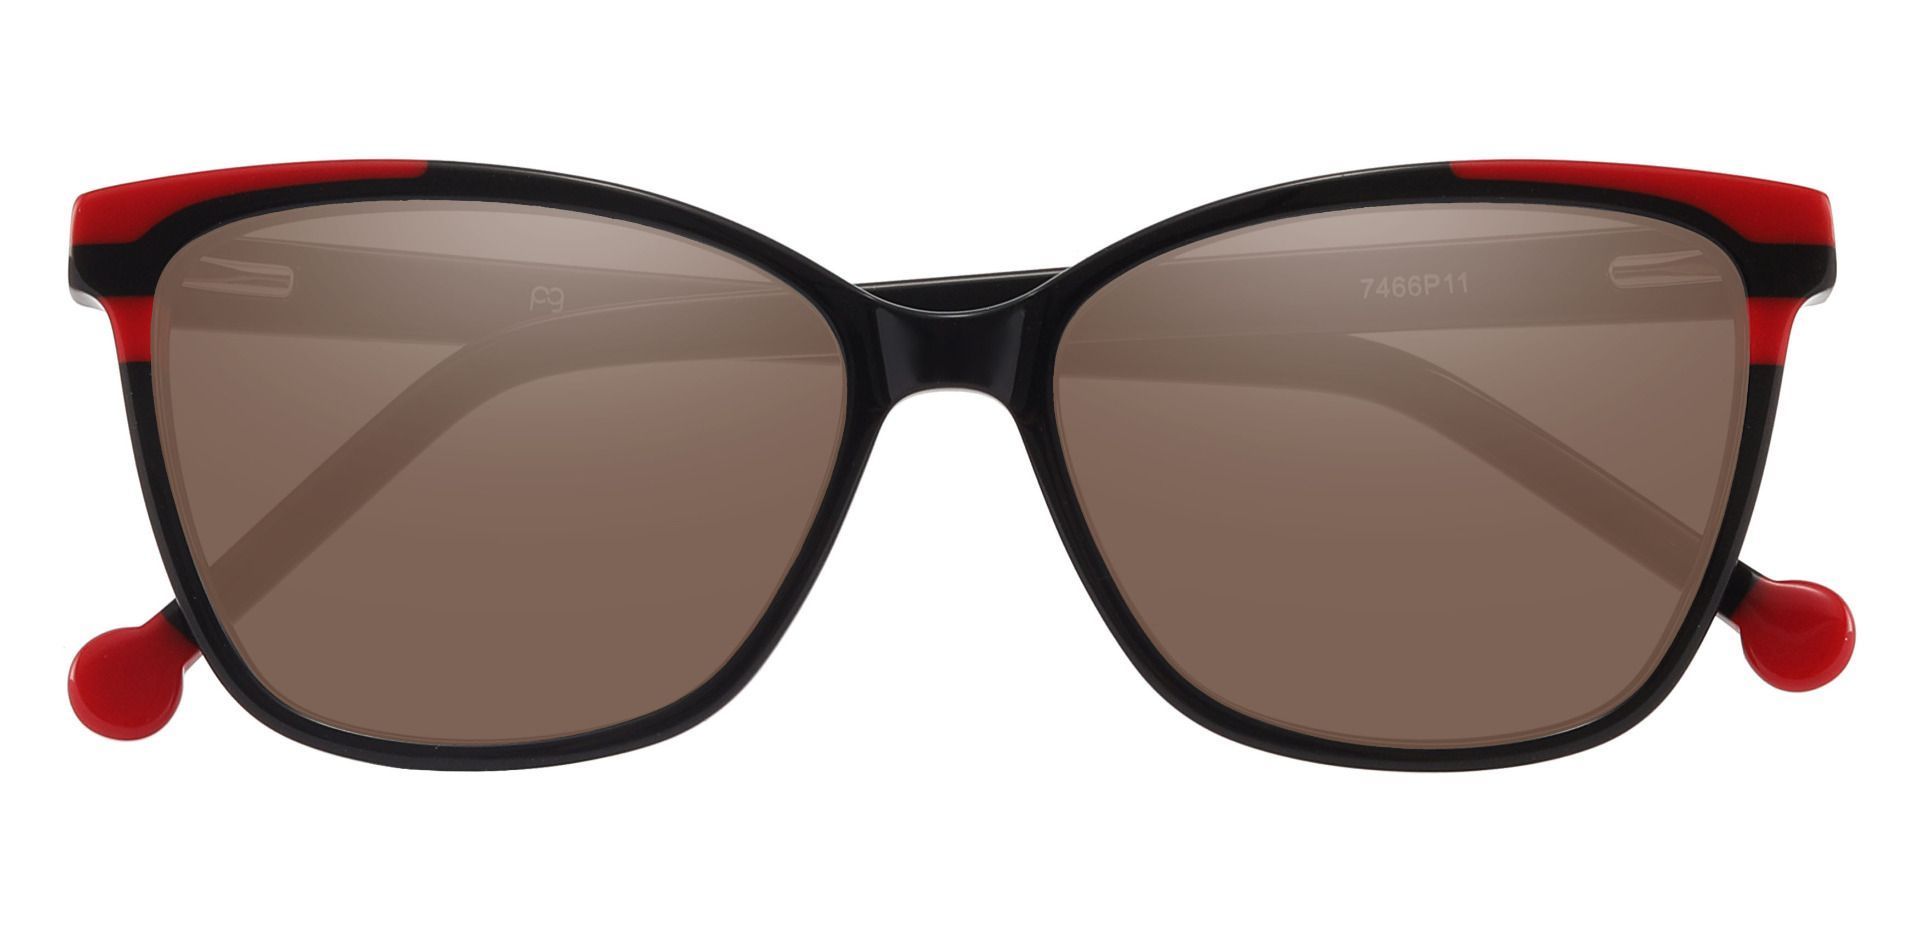 Shania Cat Eye Progressive Sunglasses - Black Frame With Brown Lenses